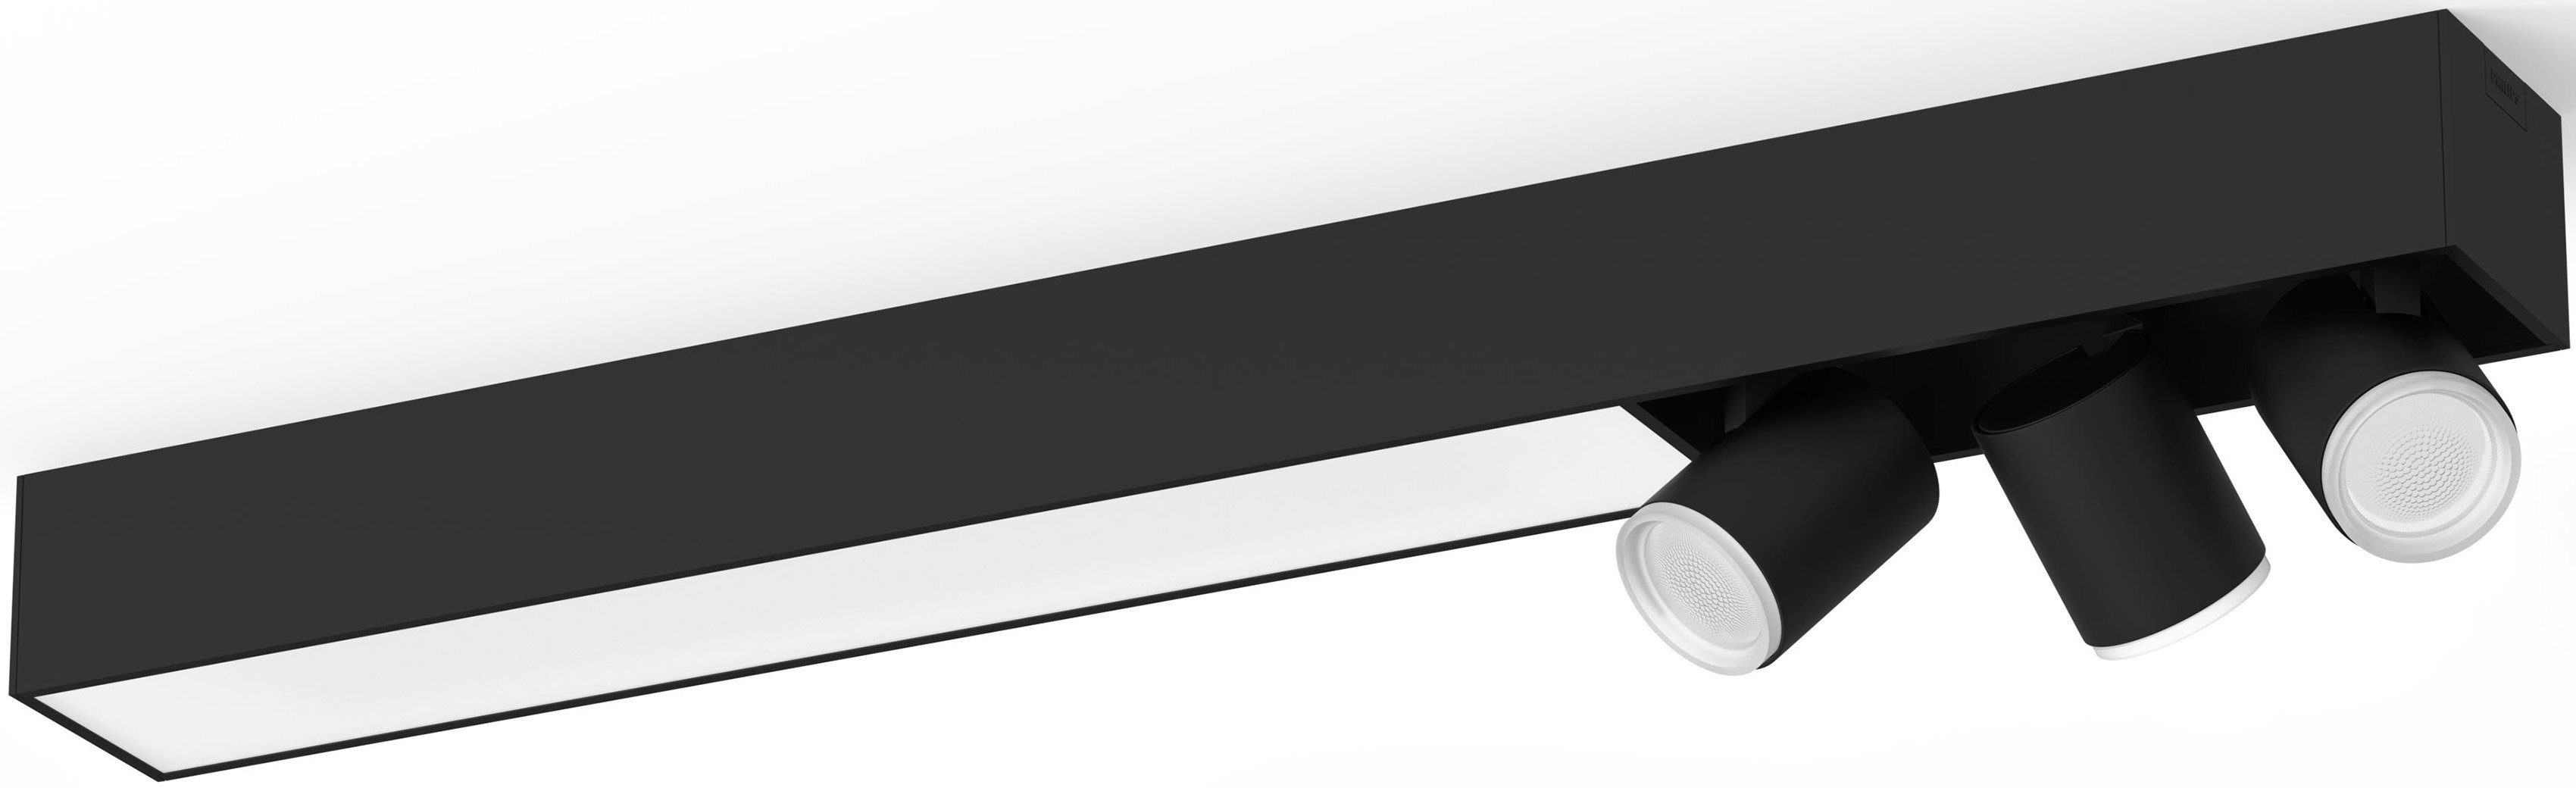 Philips Hue LED Deckenspot Centris, LED wechselbar, Farbwechsler, Individ. Lampeneinstellungen mit der Hue App, Lampen einzeln anpassbar | Deckenstrahler